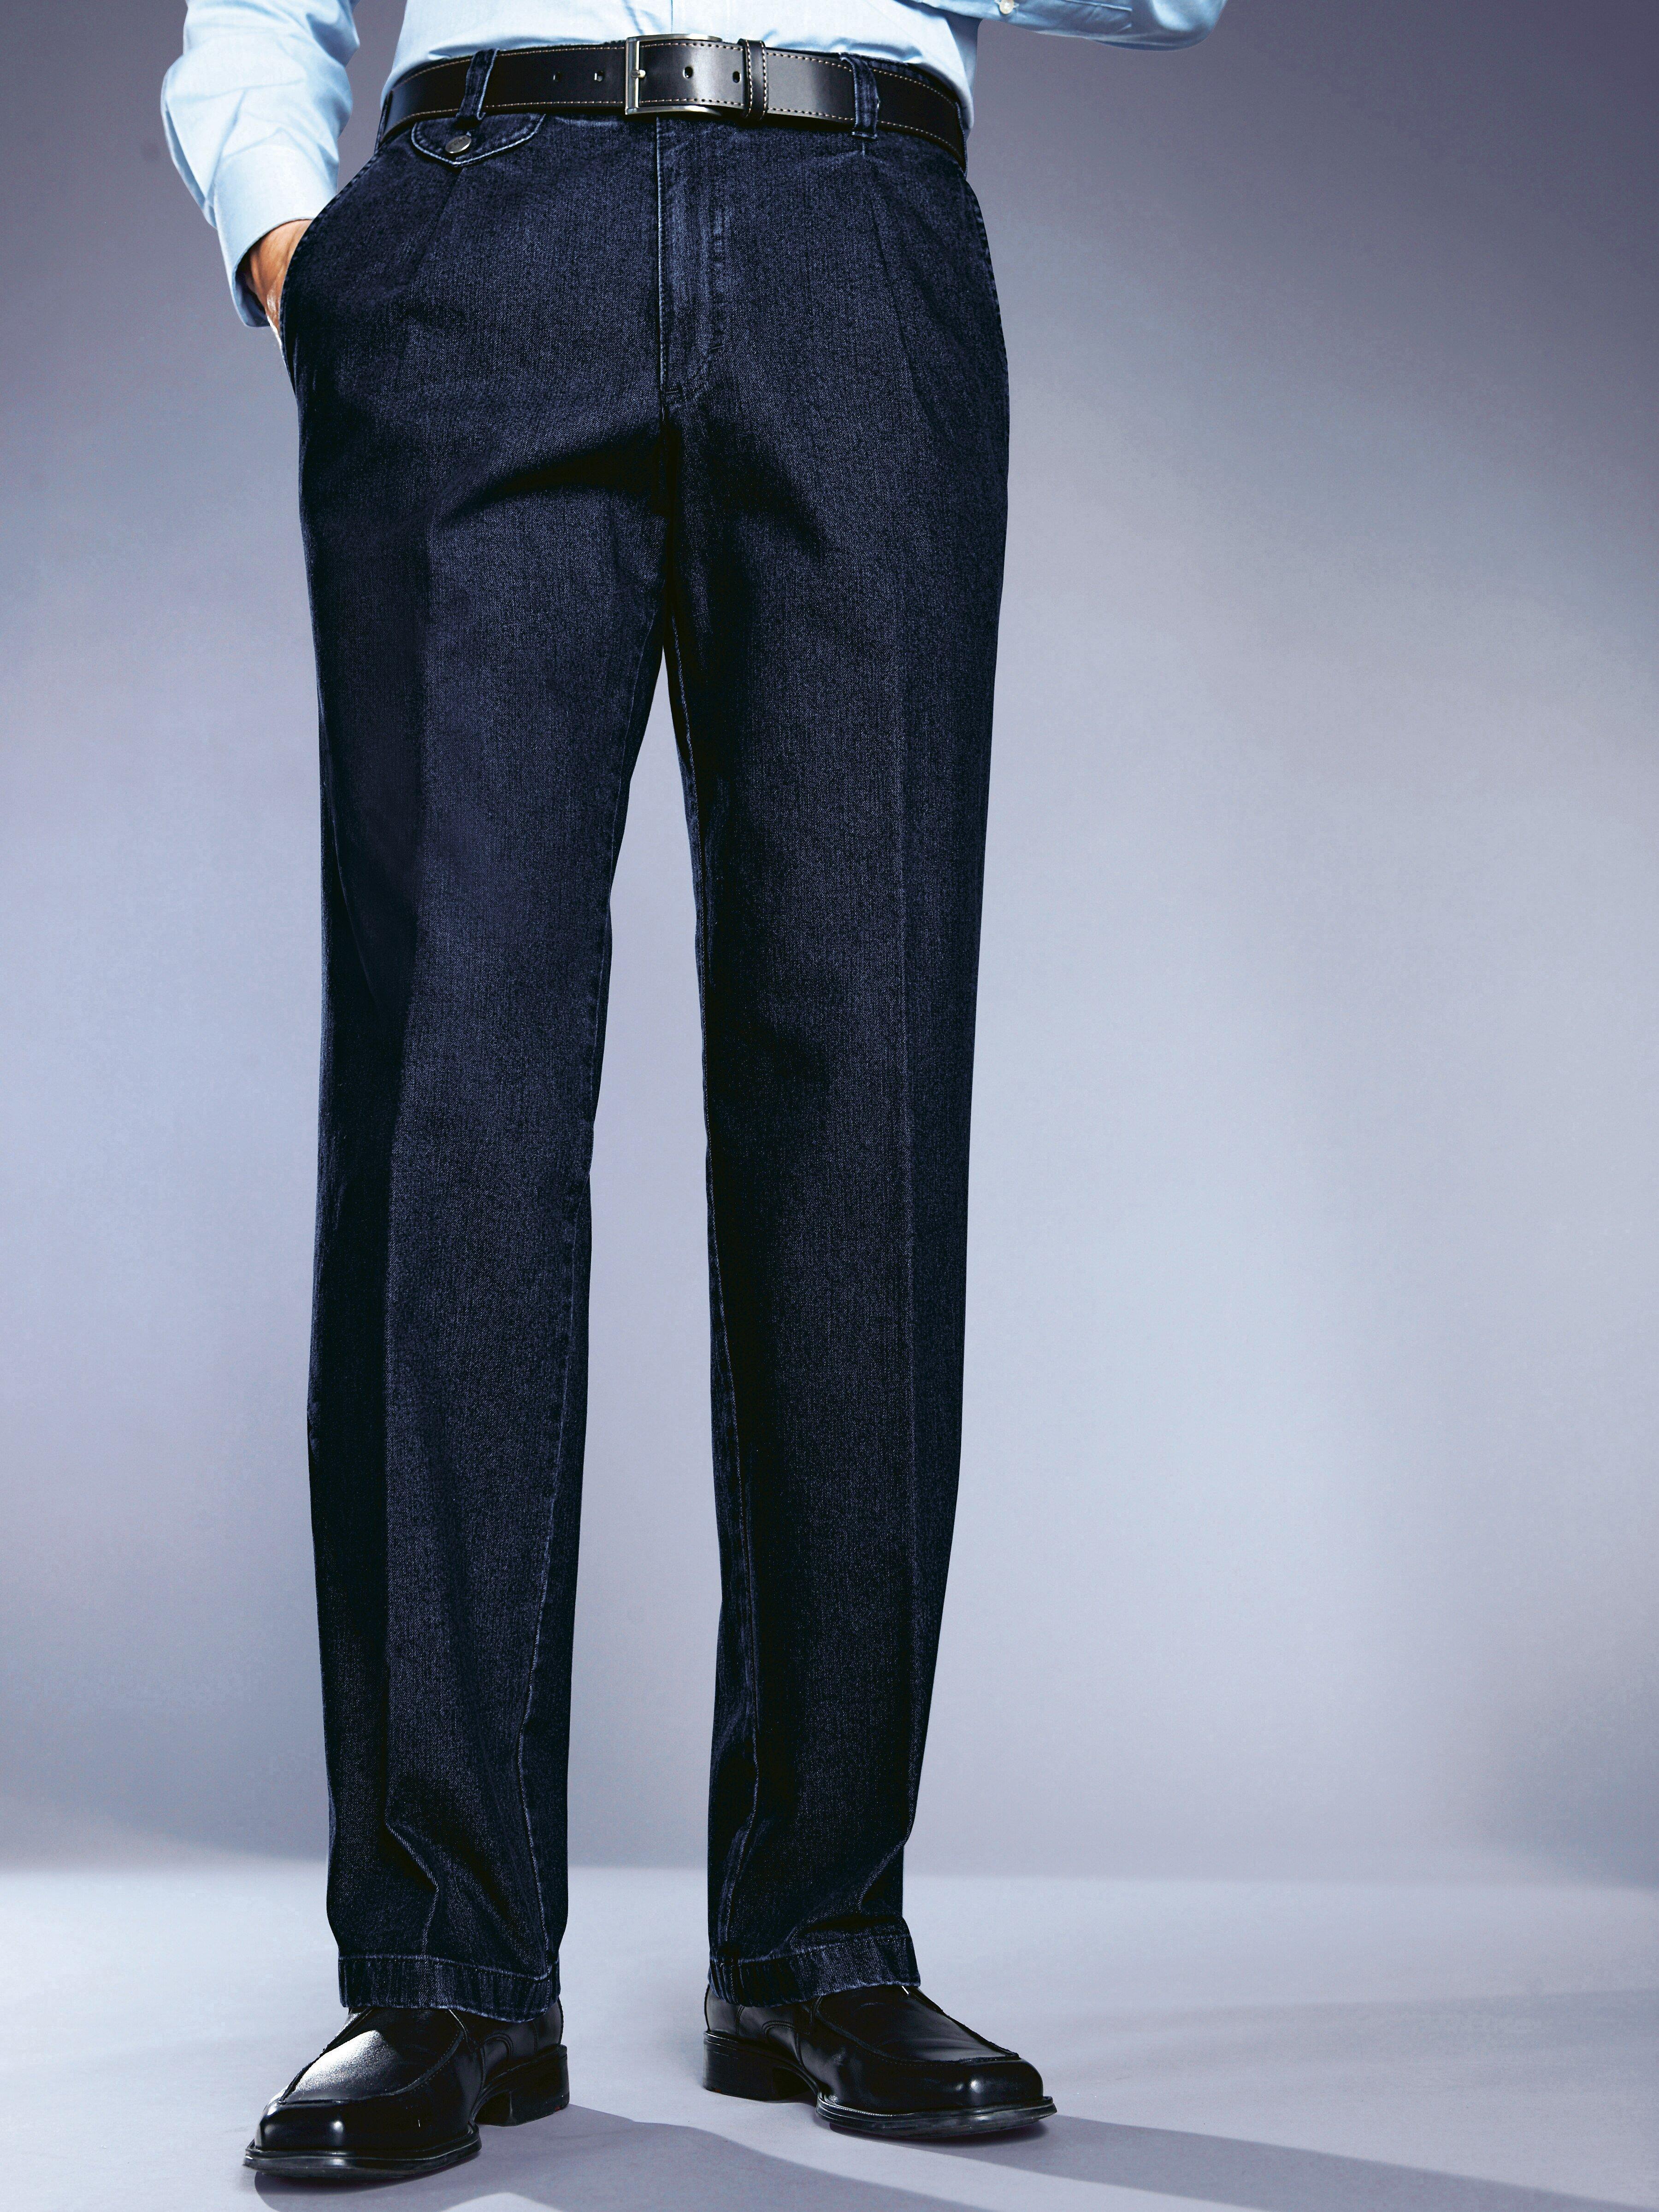 Eurex by Brax - Bandplooi-jeans model Fred met veiligheidszak